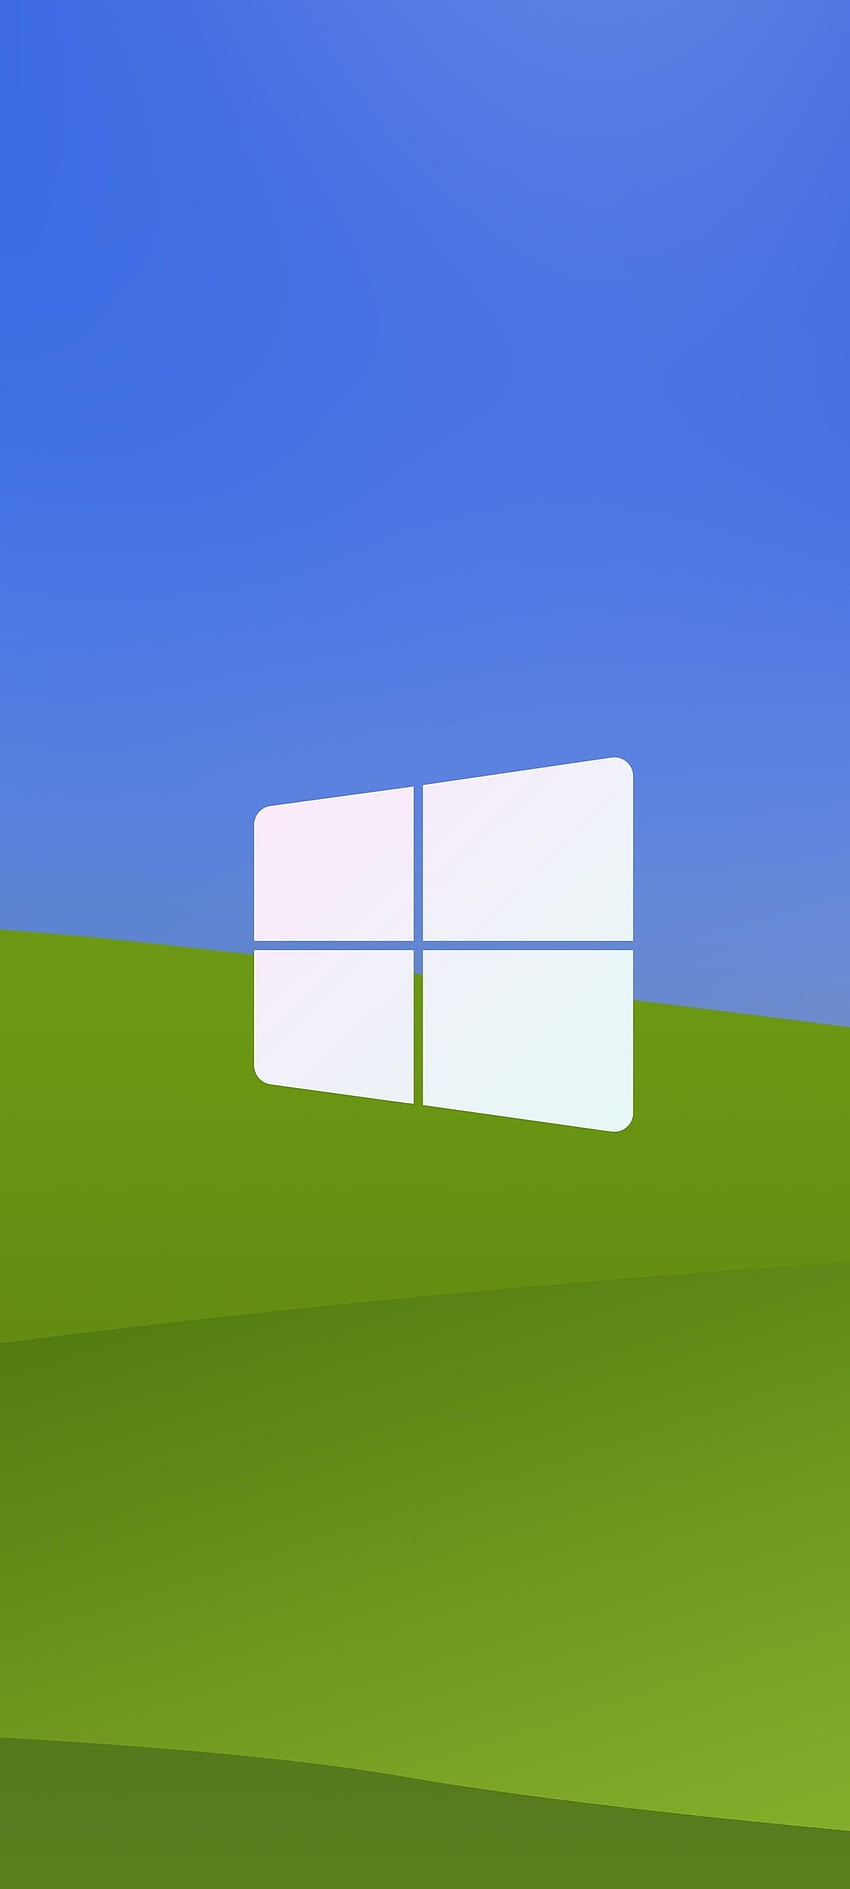 Windows XP Redesenhado, verde, windows xp, tecnologia, microsoft, , azul, plano de fundo, design, logo Papel de parede de celular HD